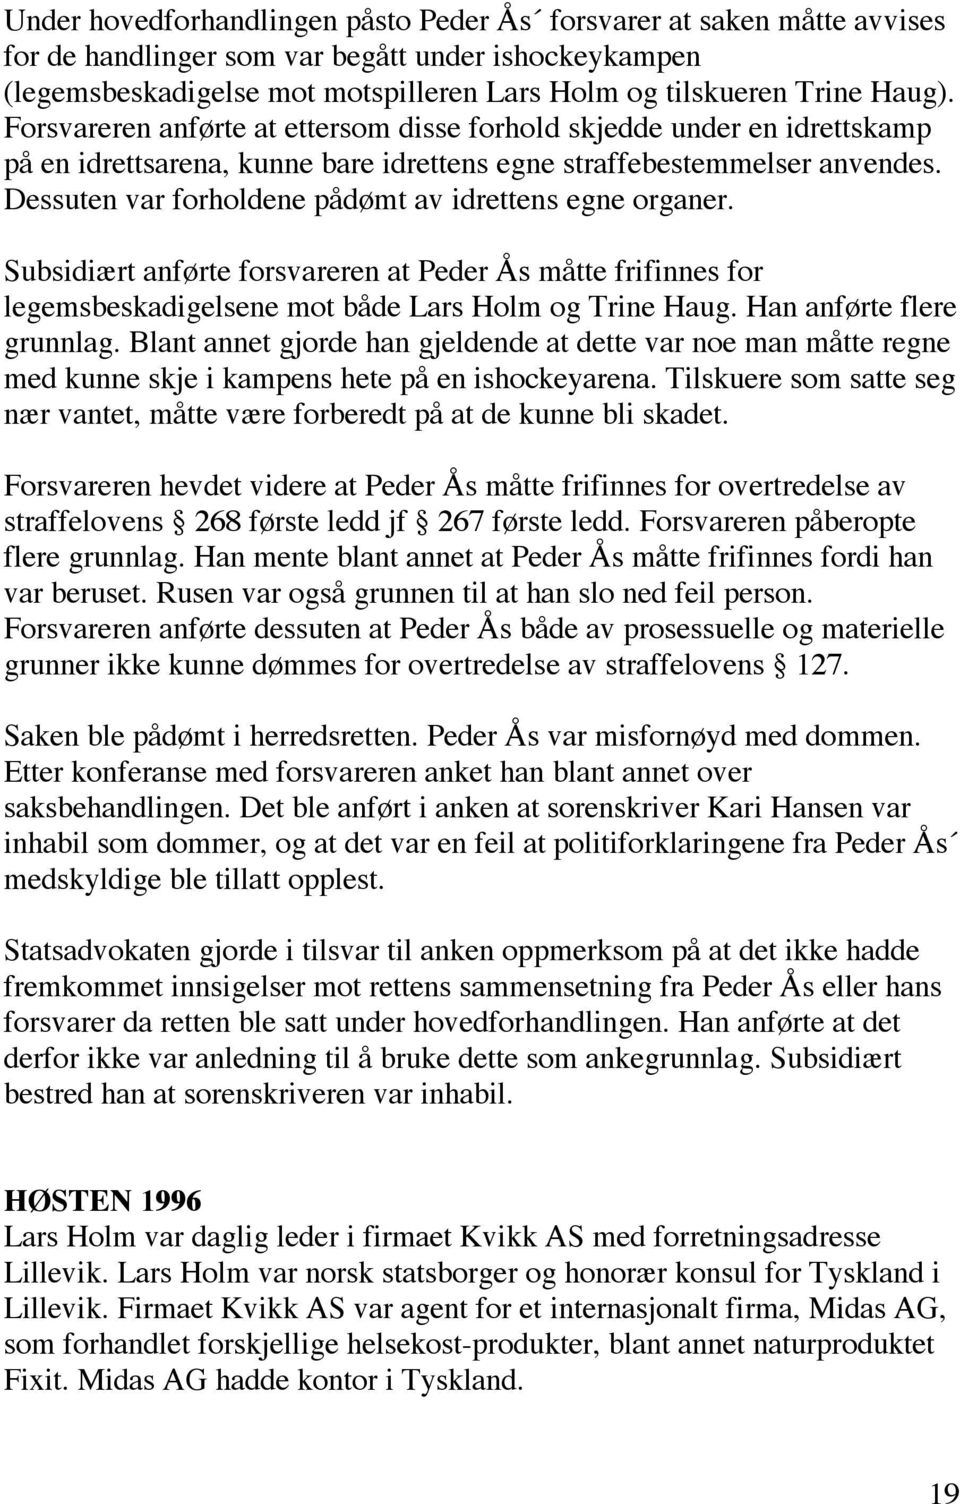 Dessuten var forholdene pådømt av idrettens egne organer. Subsidiært anførte forsvareren at Peder Ås måtte frifinnes for legemsbeskadigelsene mot både Lars Holm og Trine Haug.